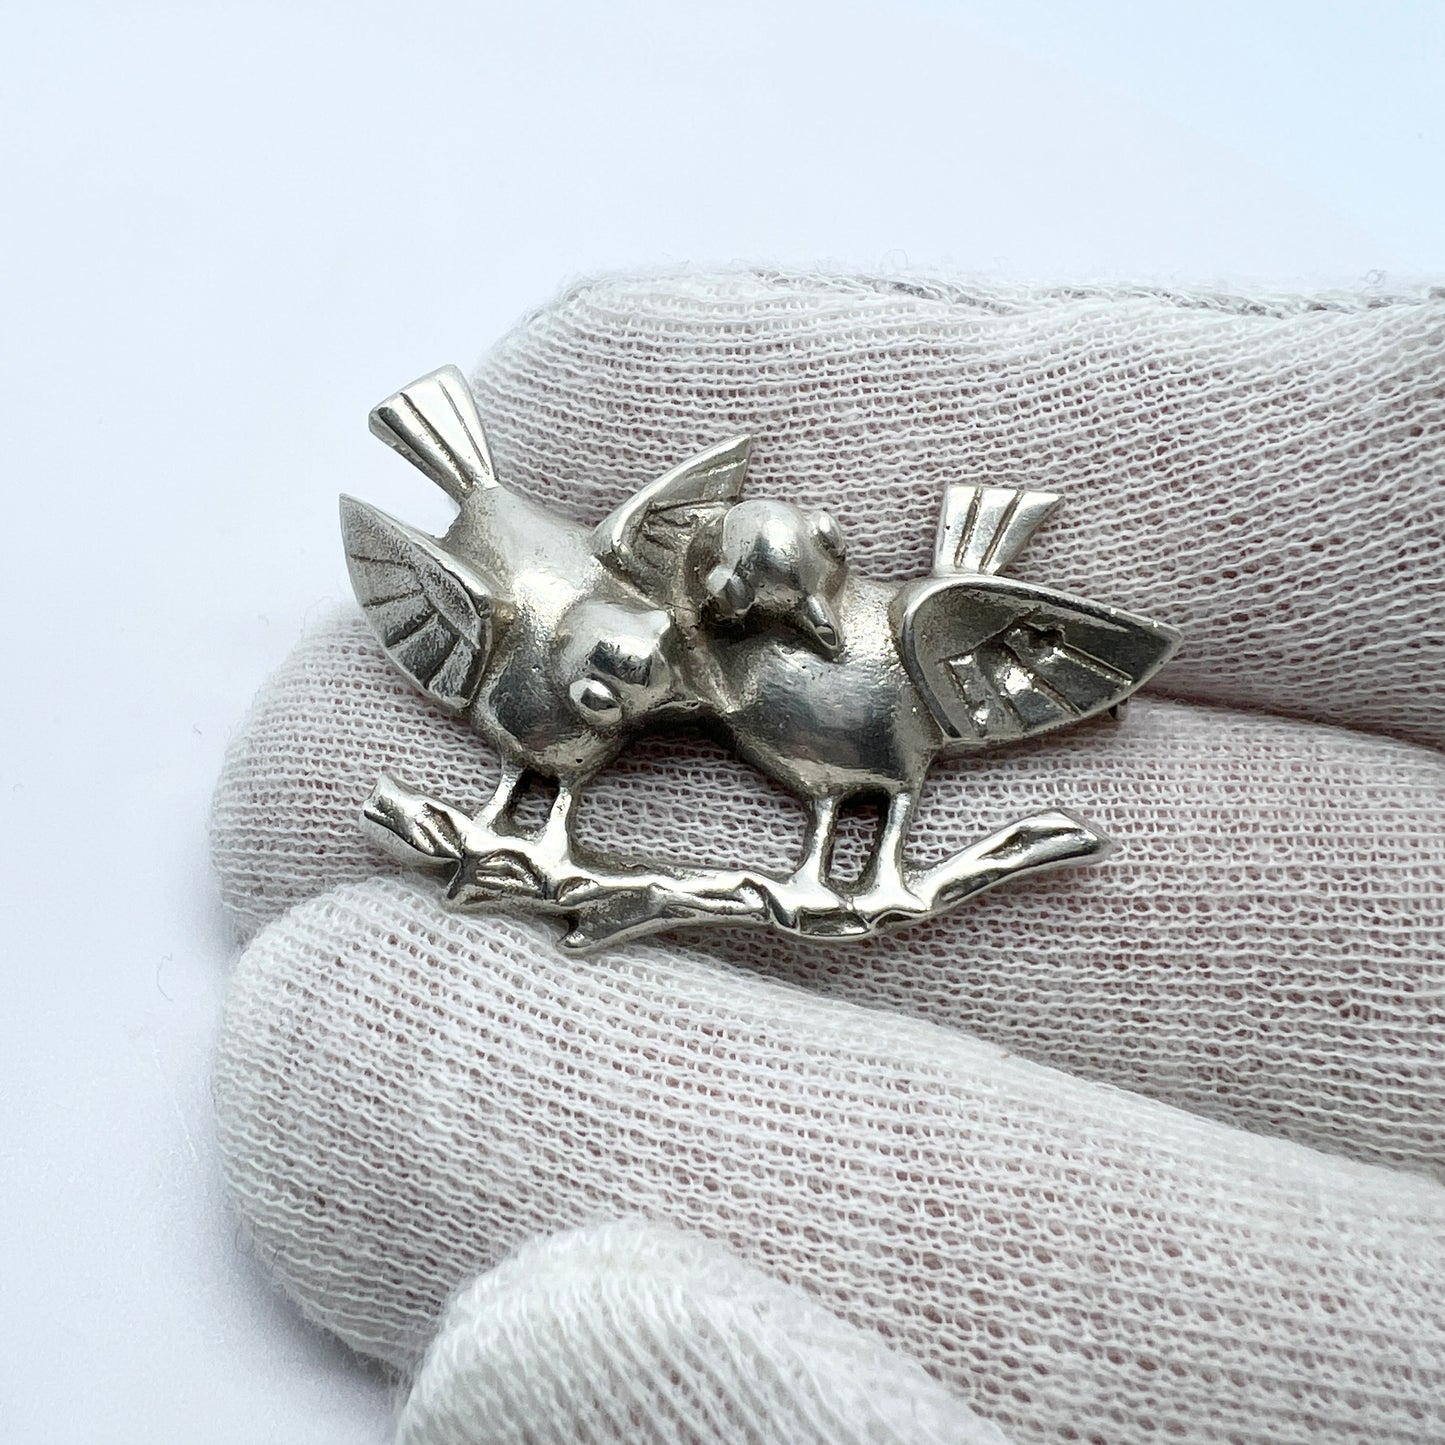 Kaplan, Sweden 1952. Vintage Sterling Silver Love Birds Brooch.